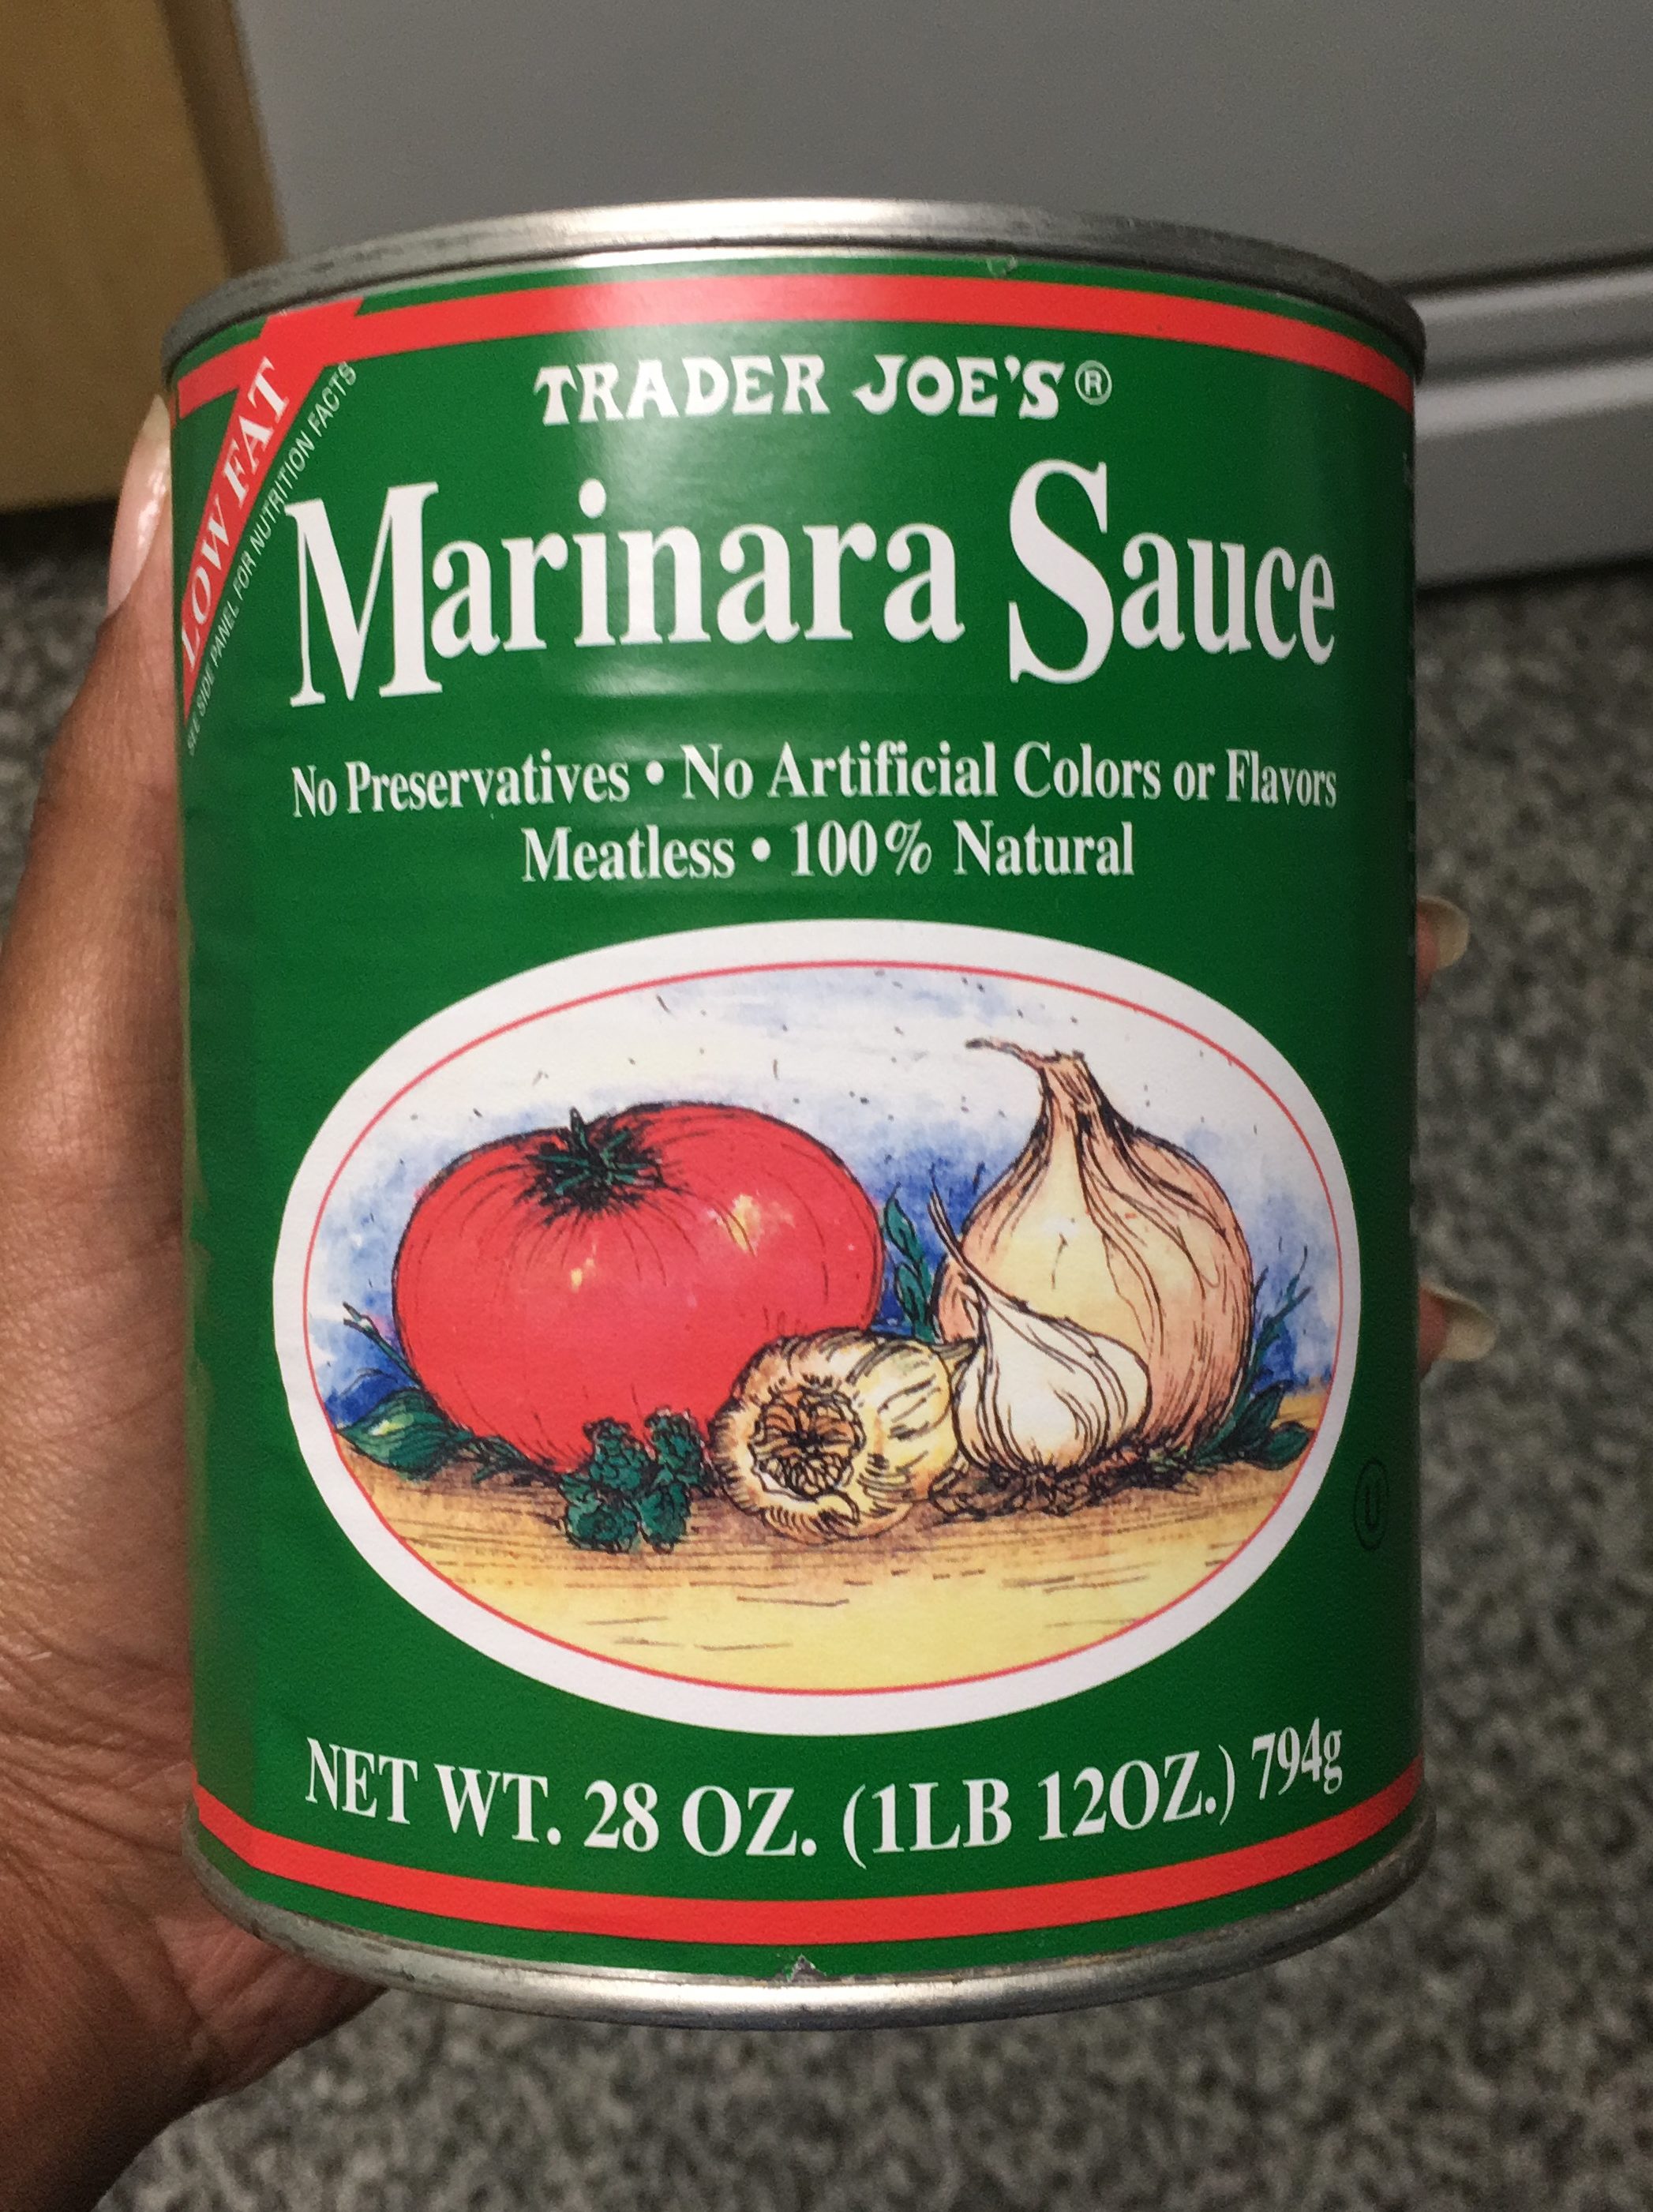 Whole 30 Approved Trader Joe's Marinara Sauce